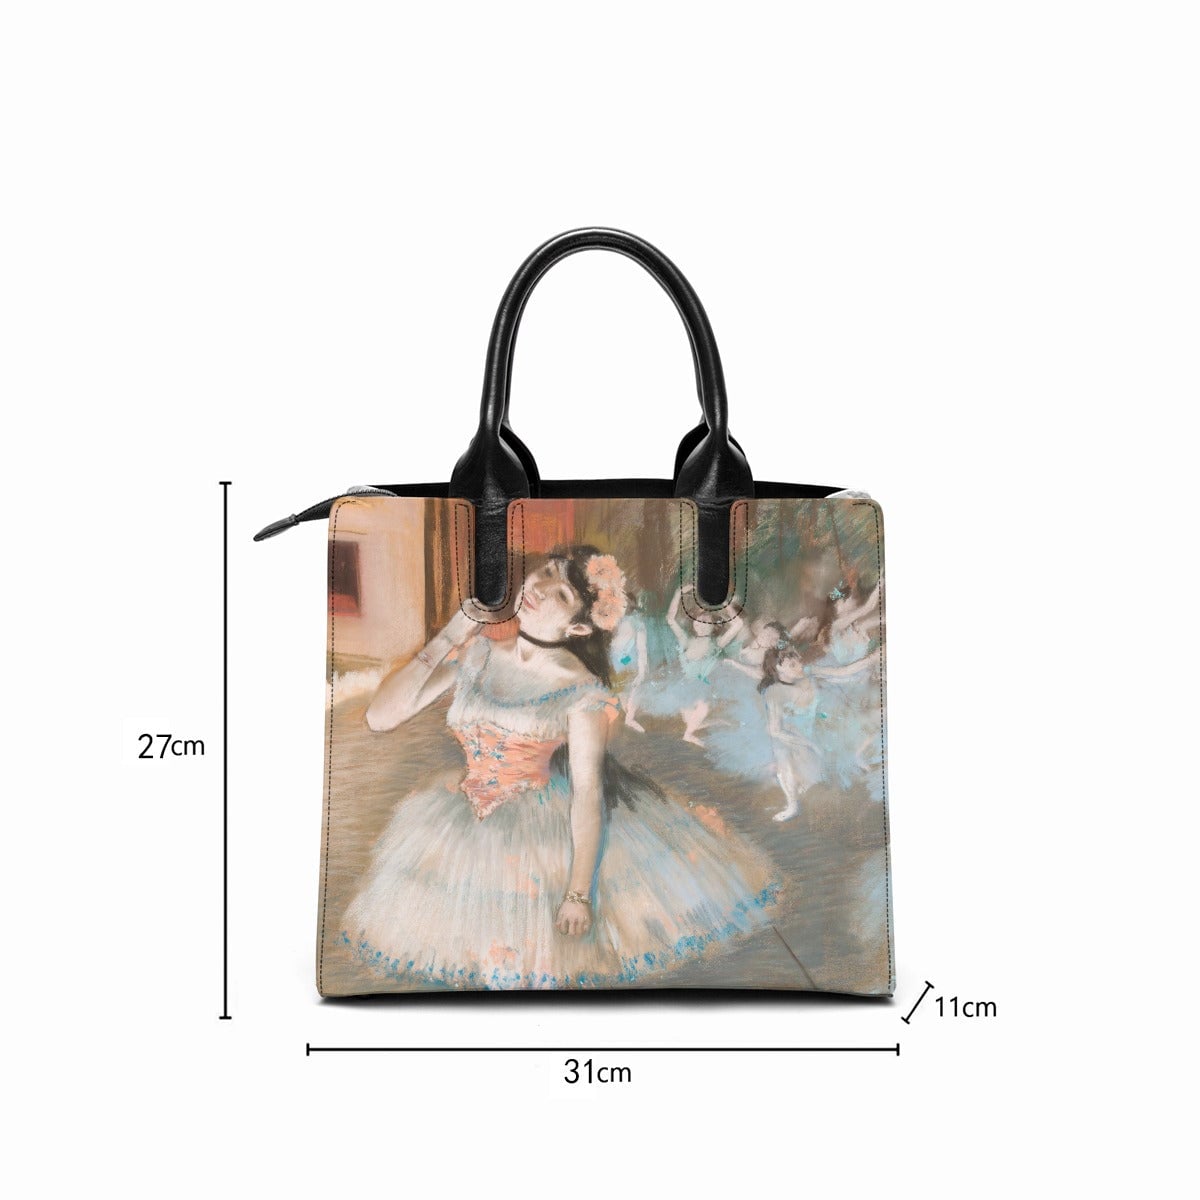 The Star Ballet Dancer by Edgar Degas Art Handbag